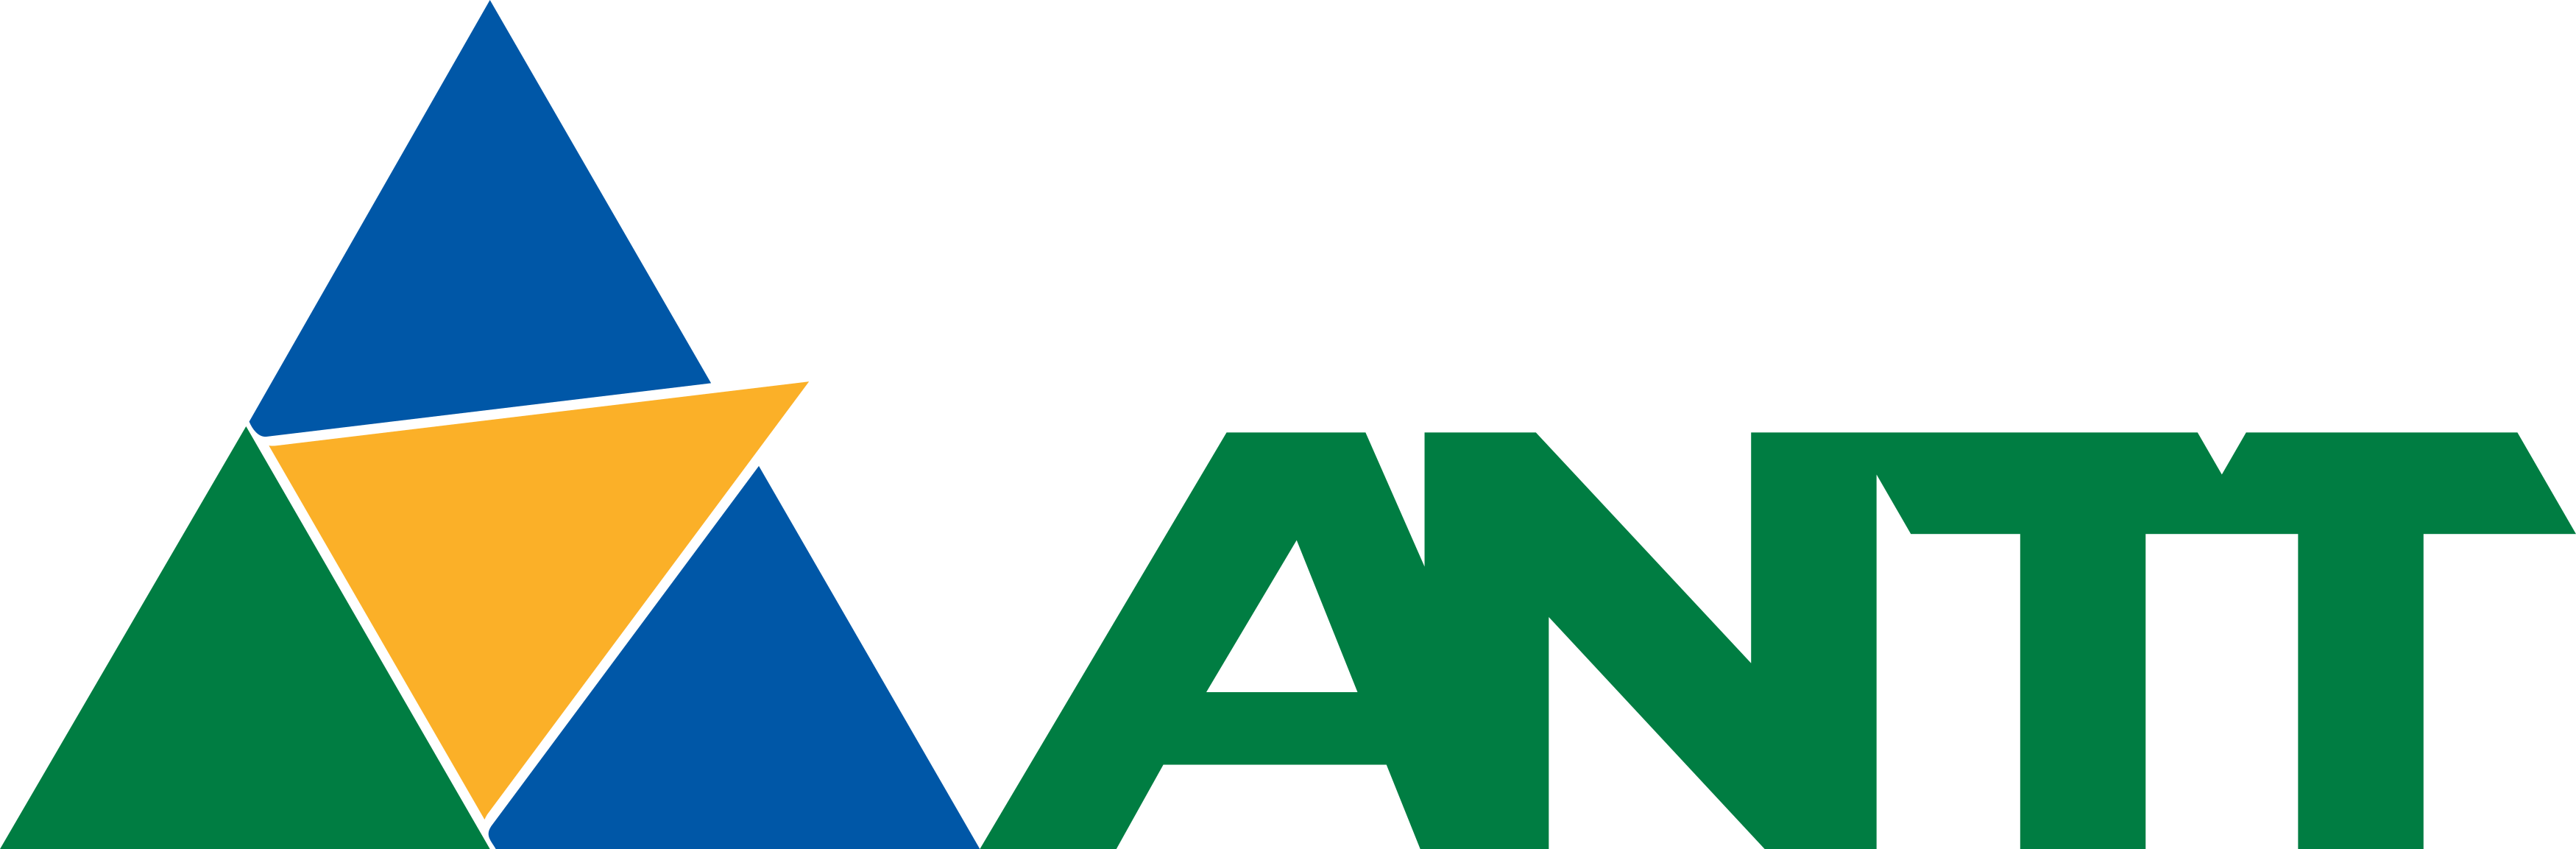 antt-logo